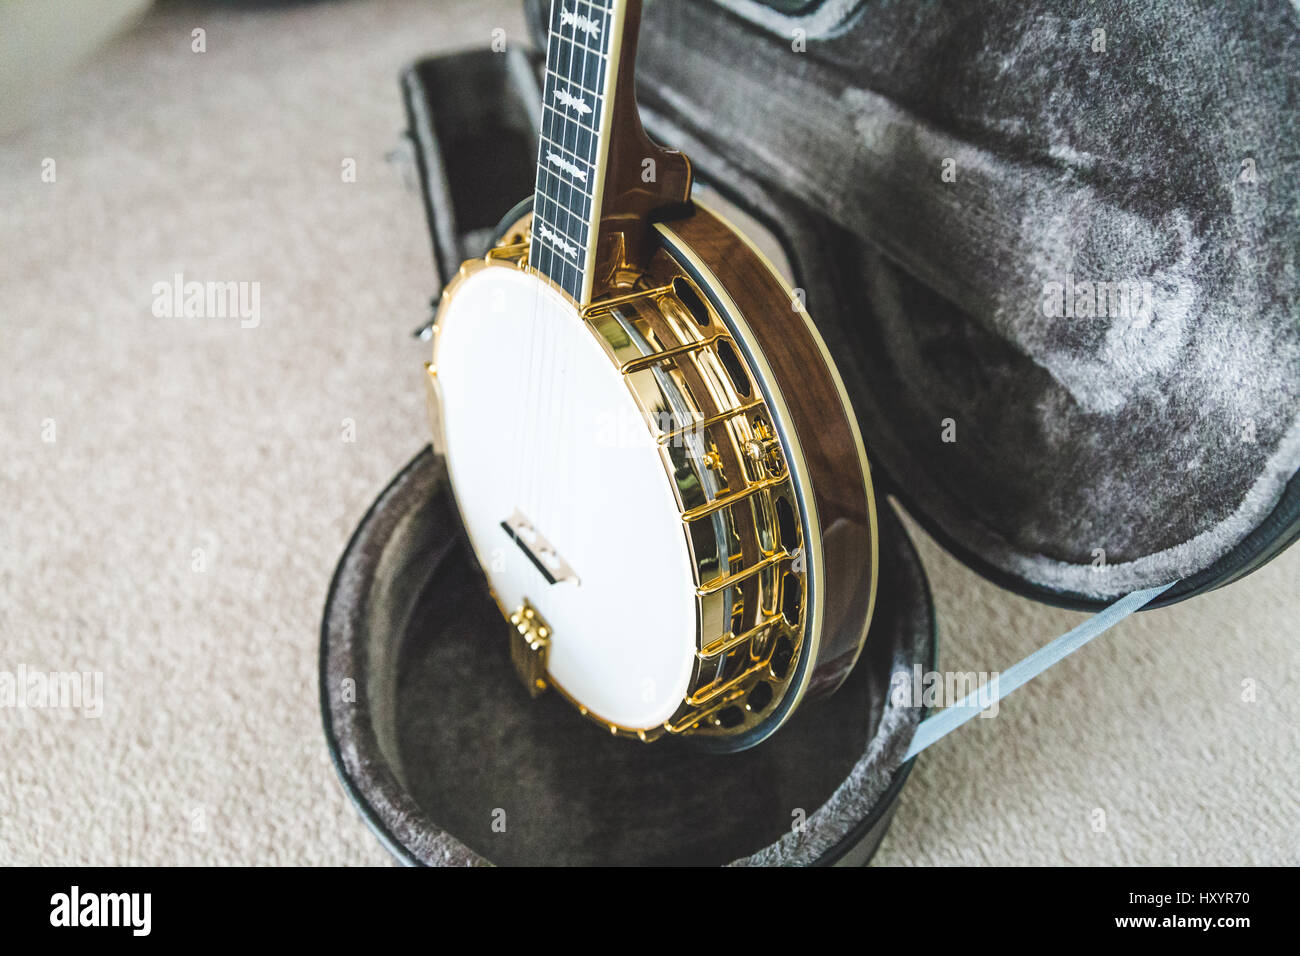 High-value banjo in custom hard case. Banjo has mahogany body and gold accents. Stock Photo